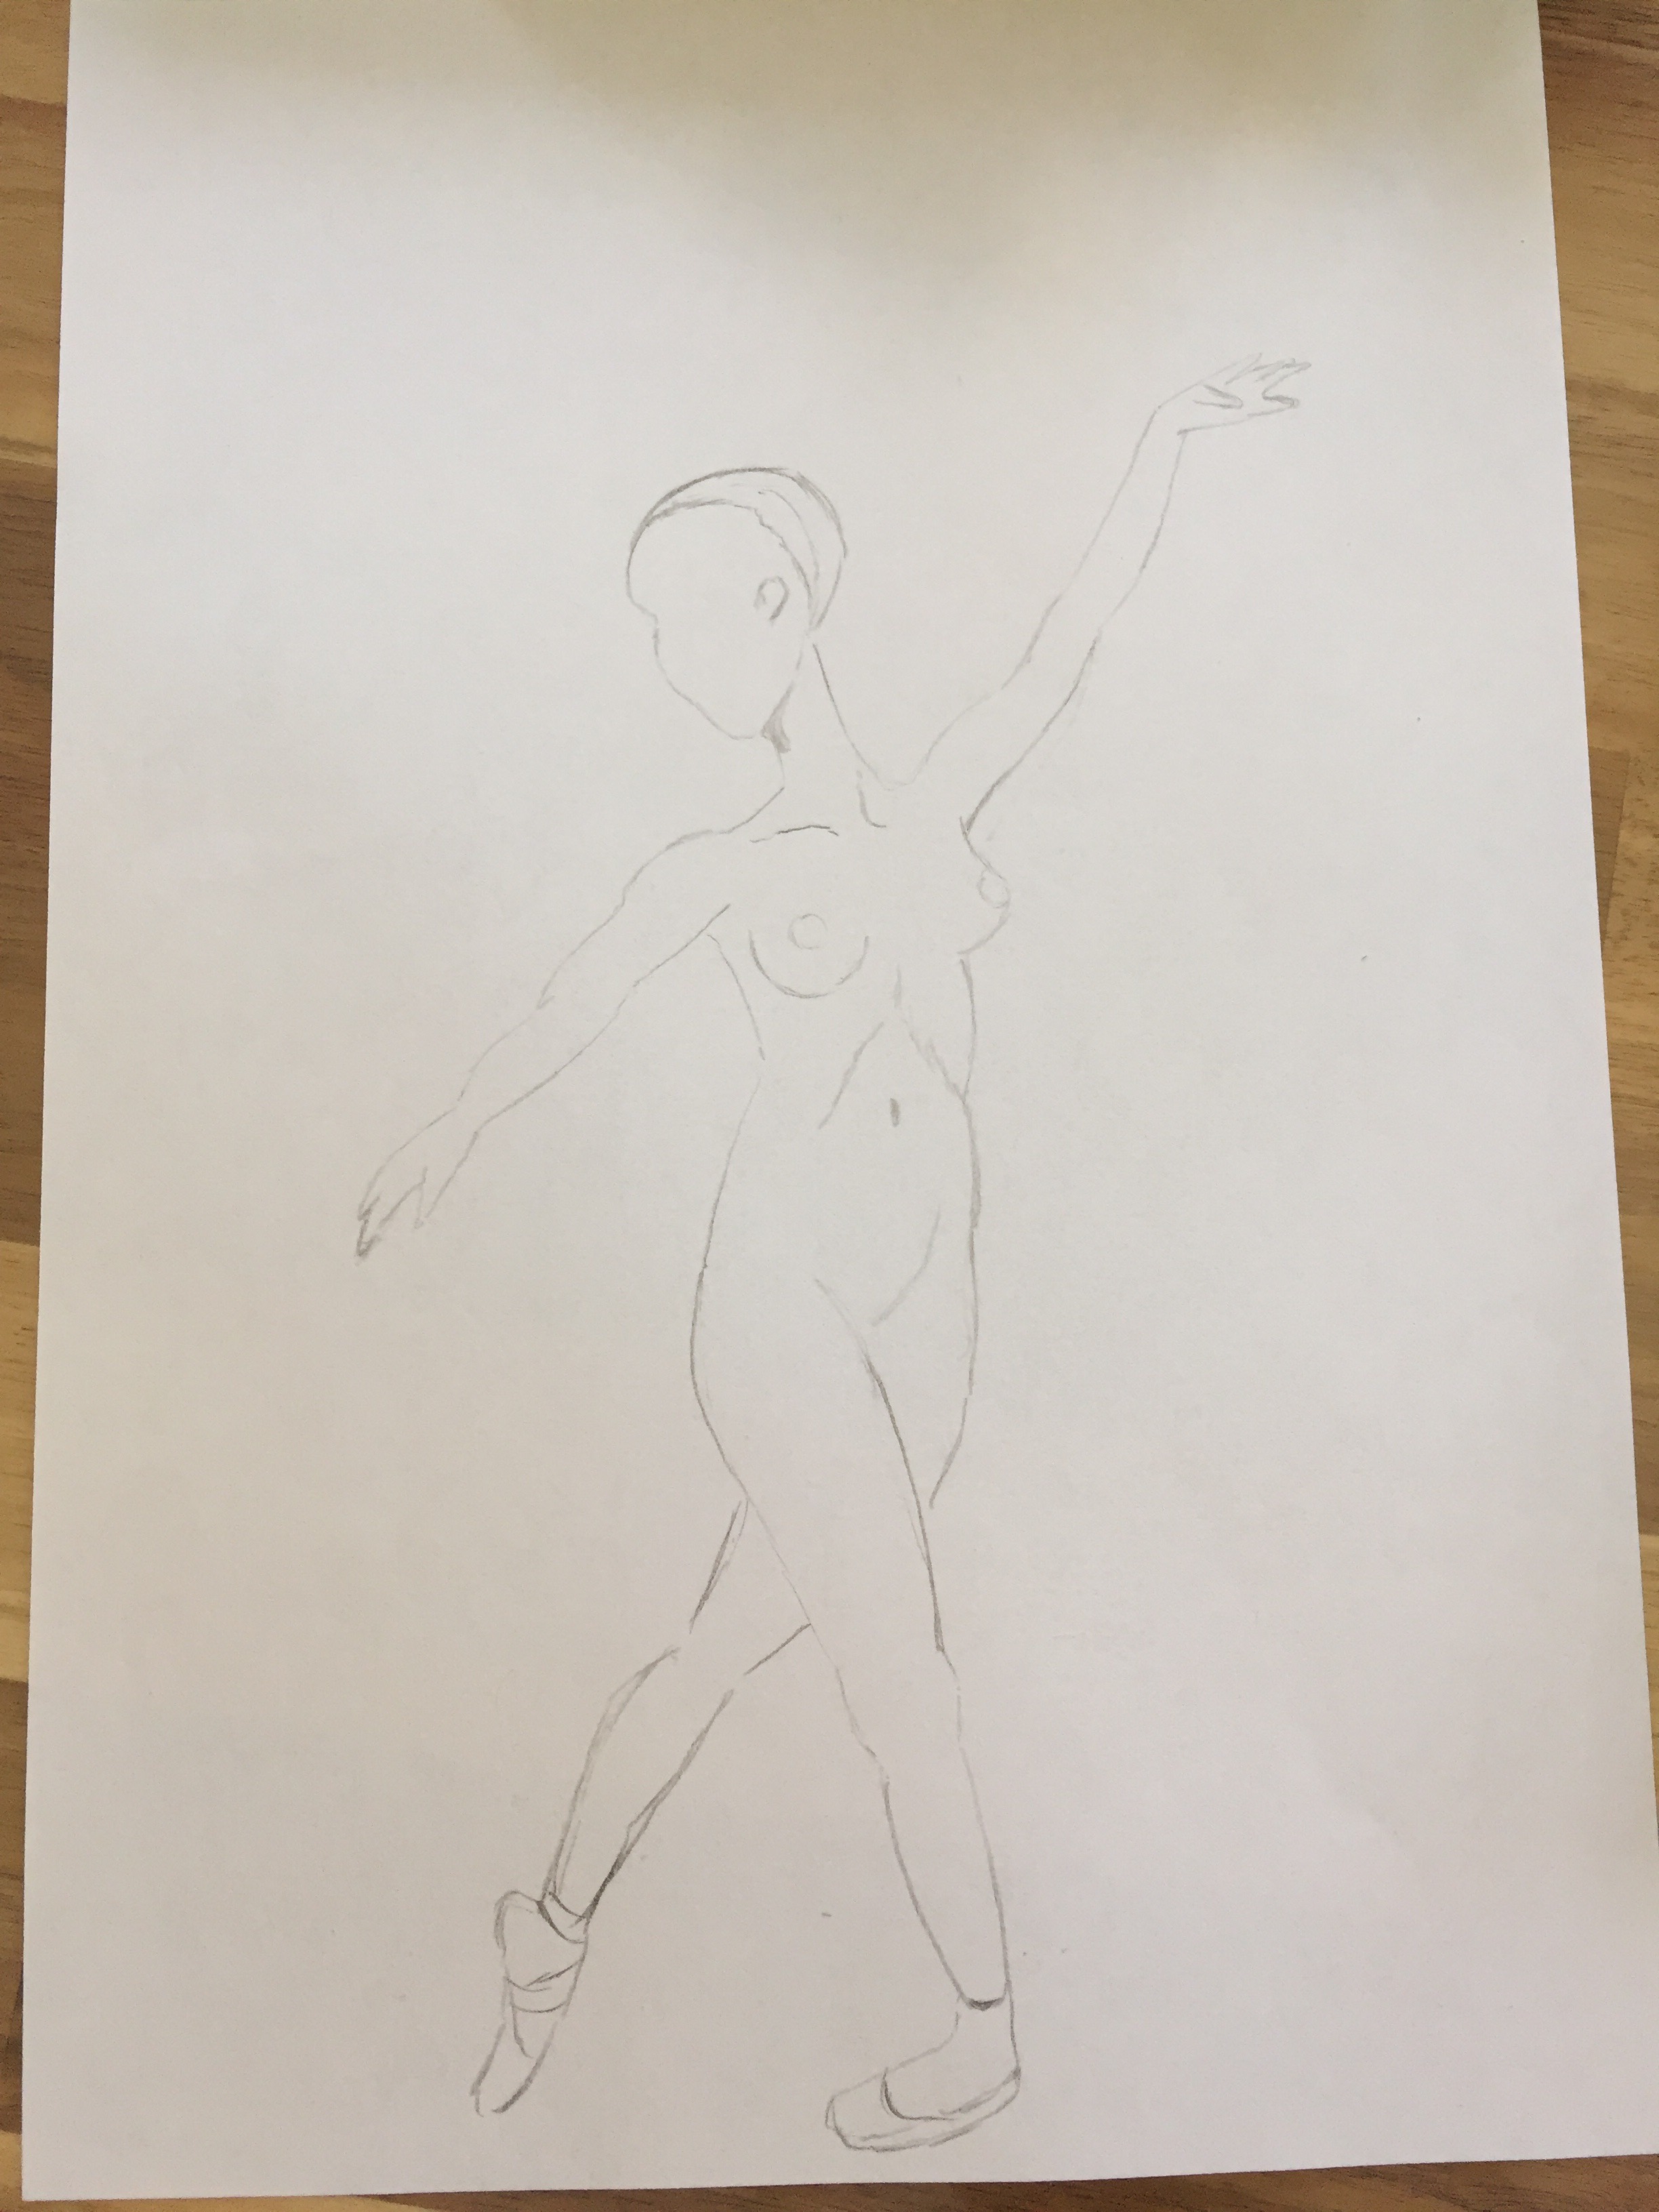  Esquisse rapide danseuse  cours de dessin 